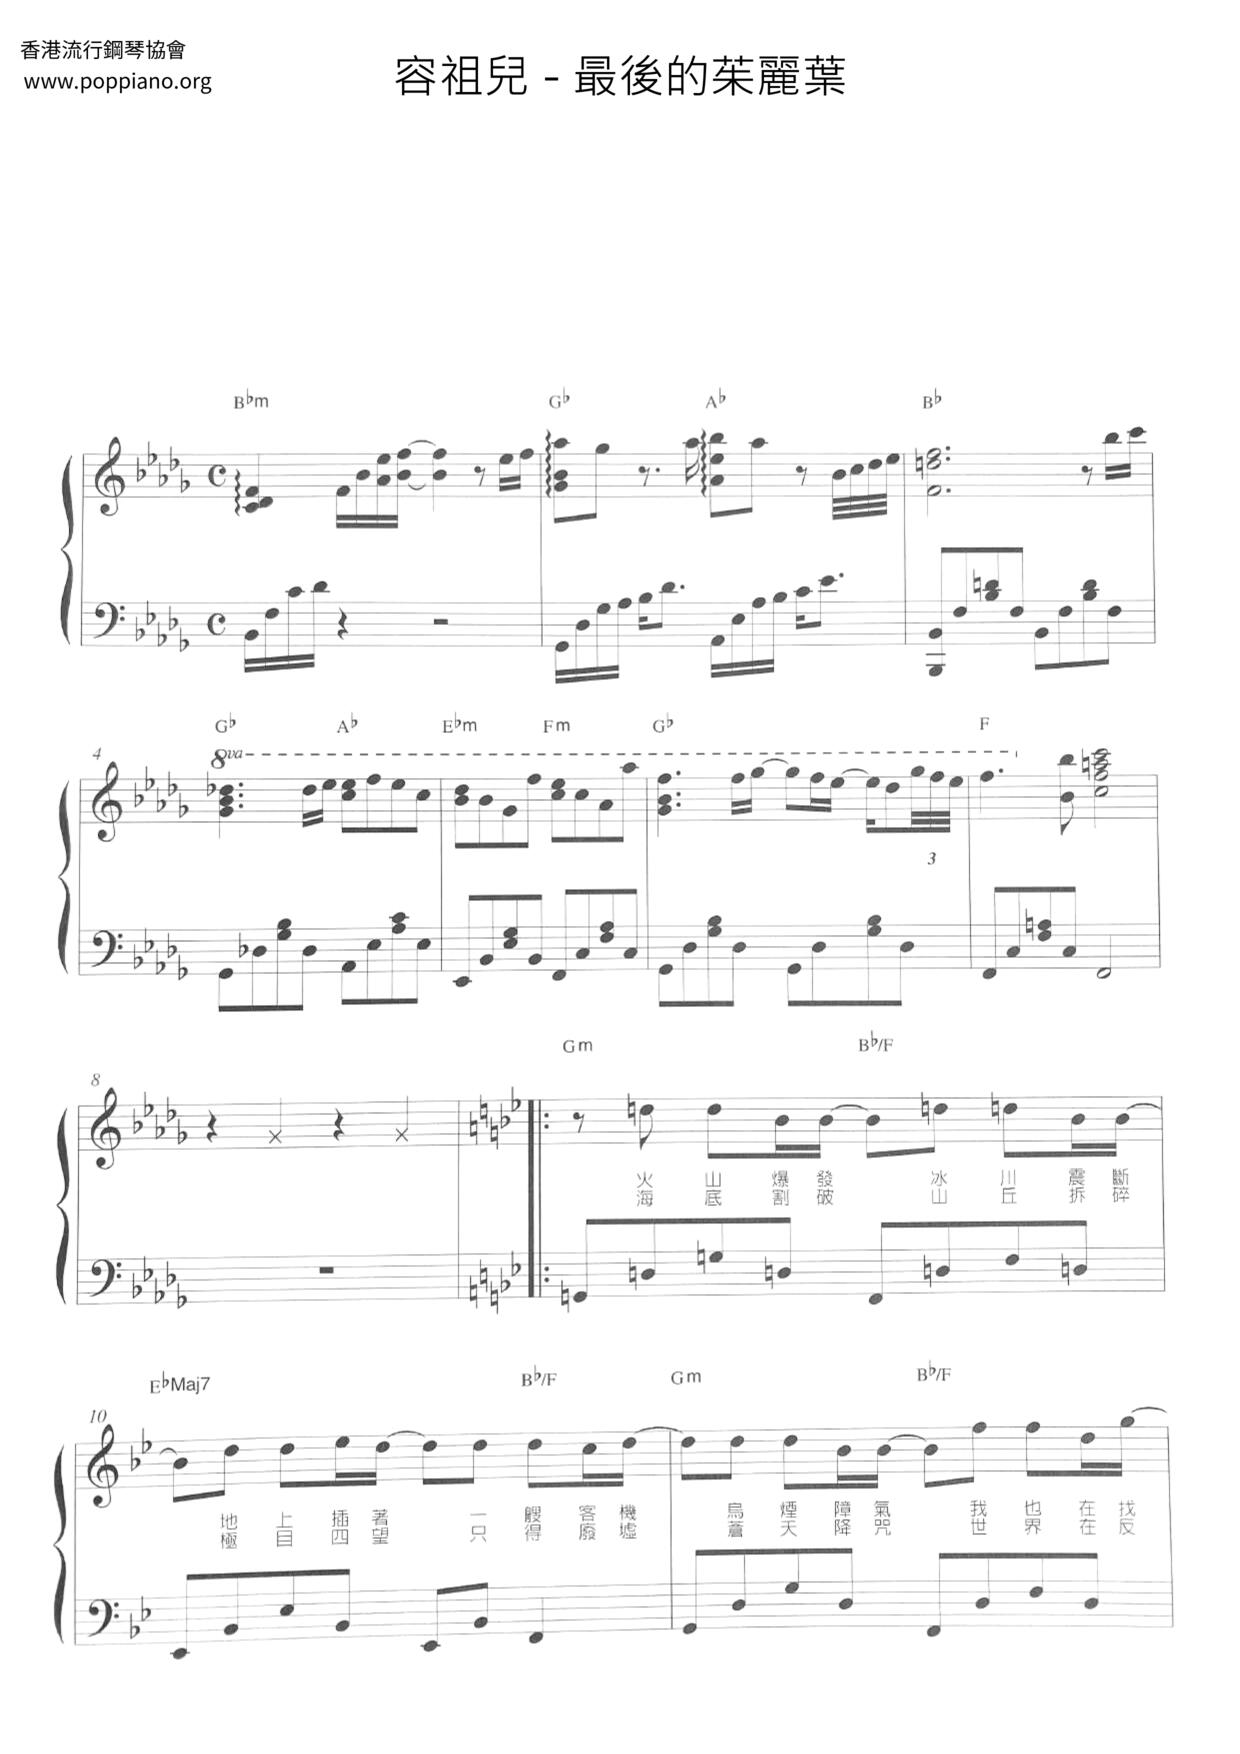 The Last Juliet Score